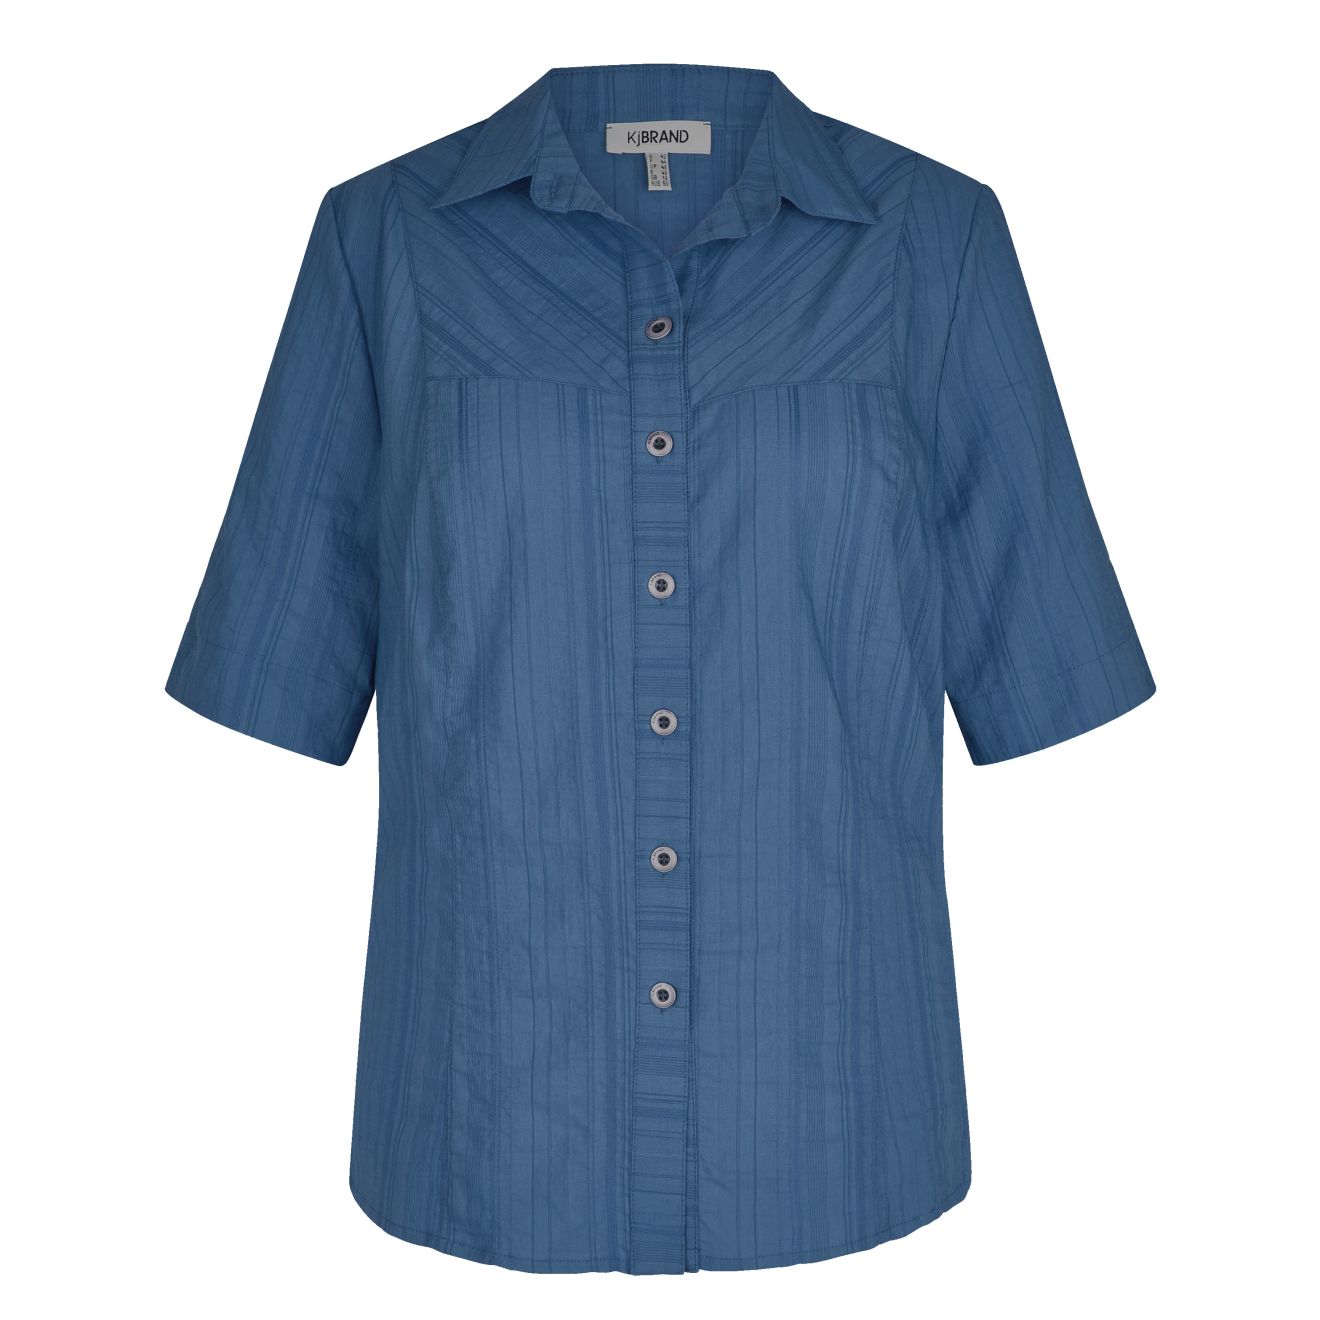 KjBRAND leichte, elastische >wash & wear< Halbarm Hemdbluse mit Knopfleiste  & Kragen, aus leichtem Seersucker-Stoff, Größe 60-62 | Bermudas